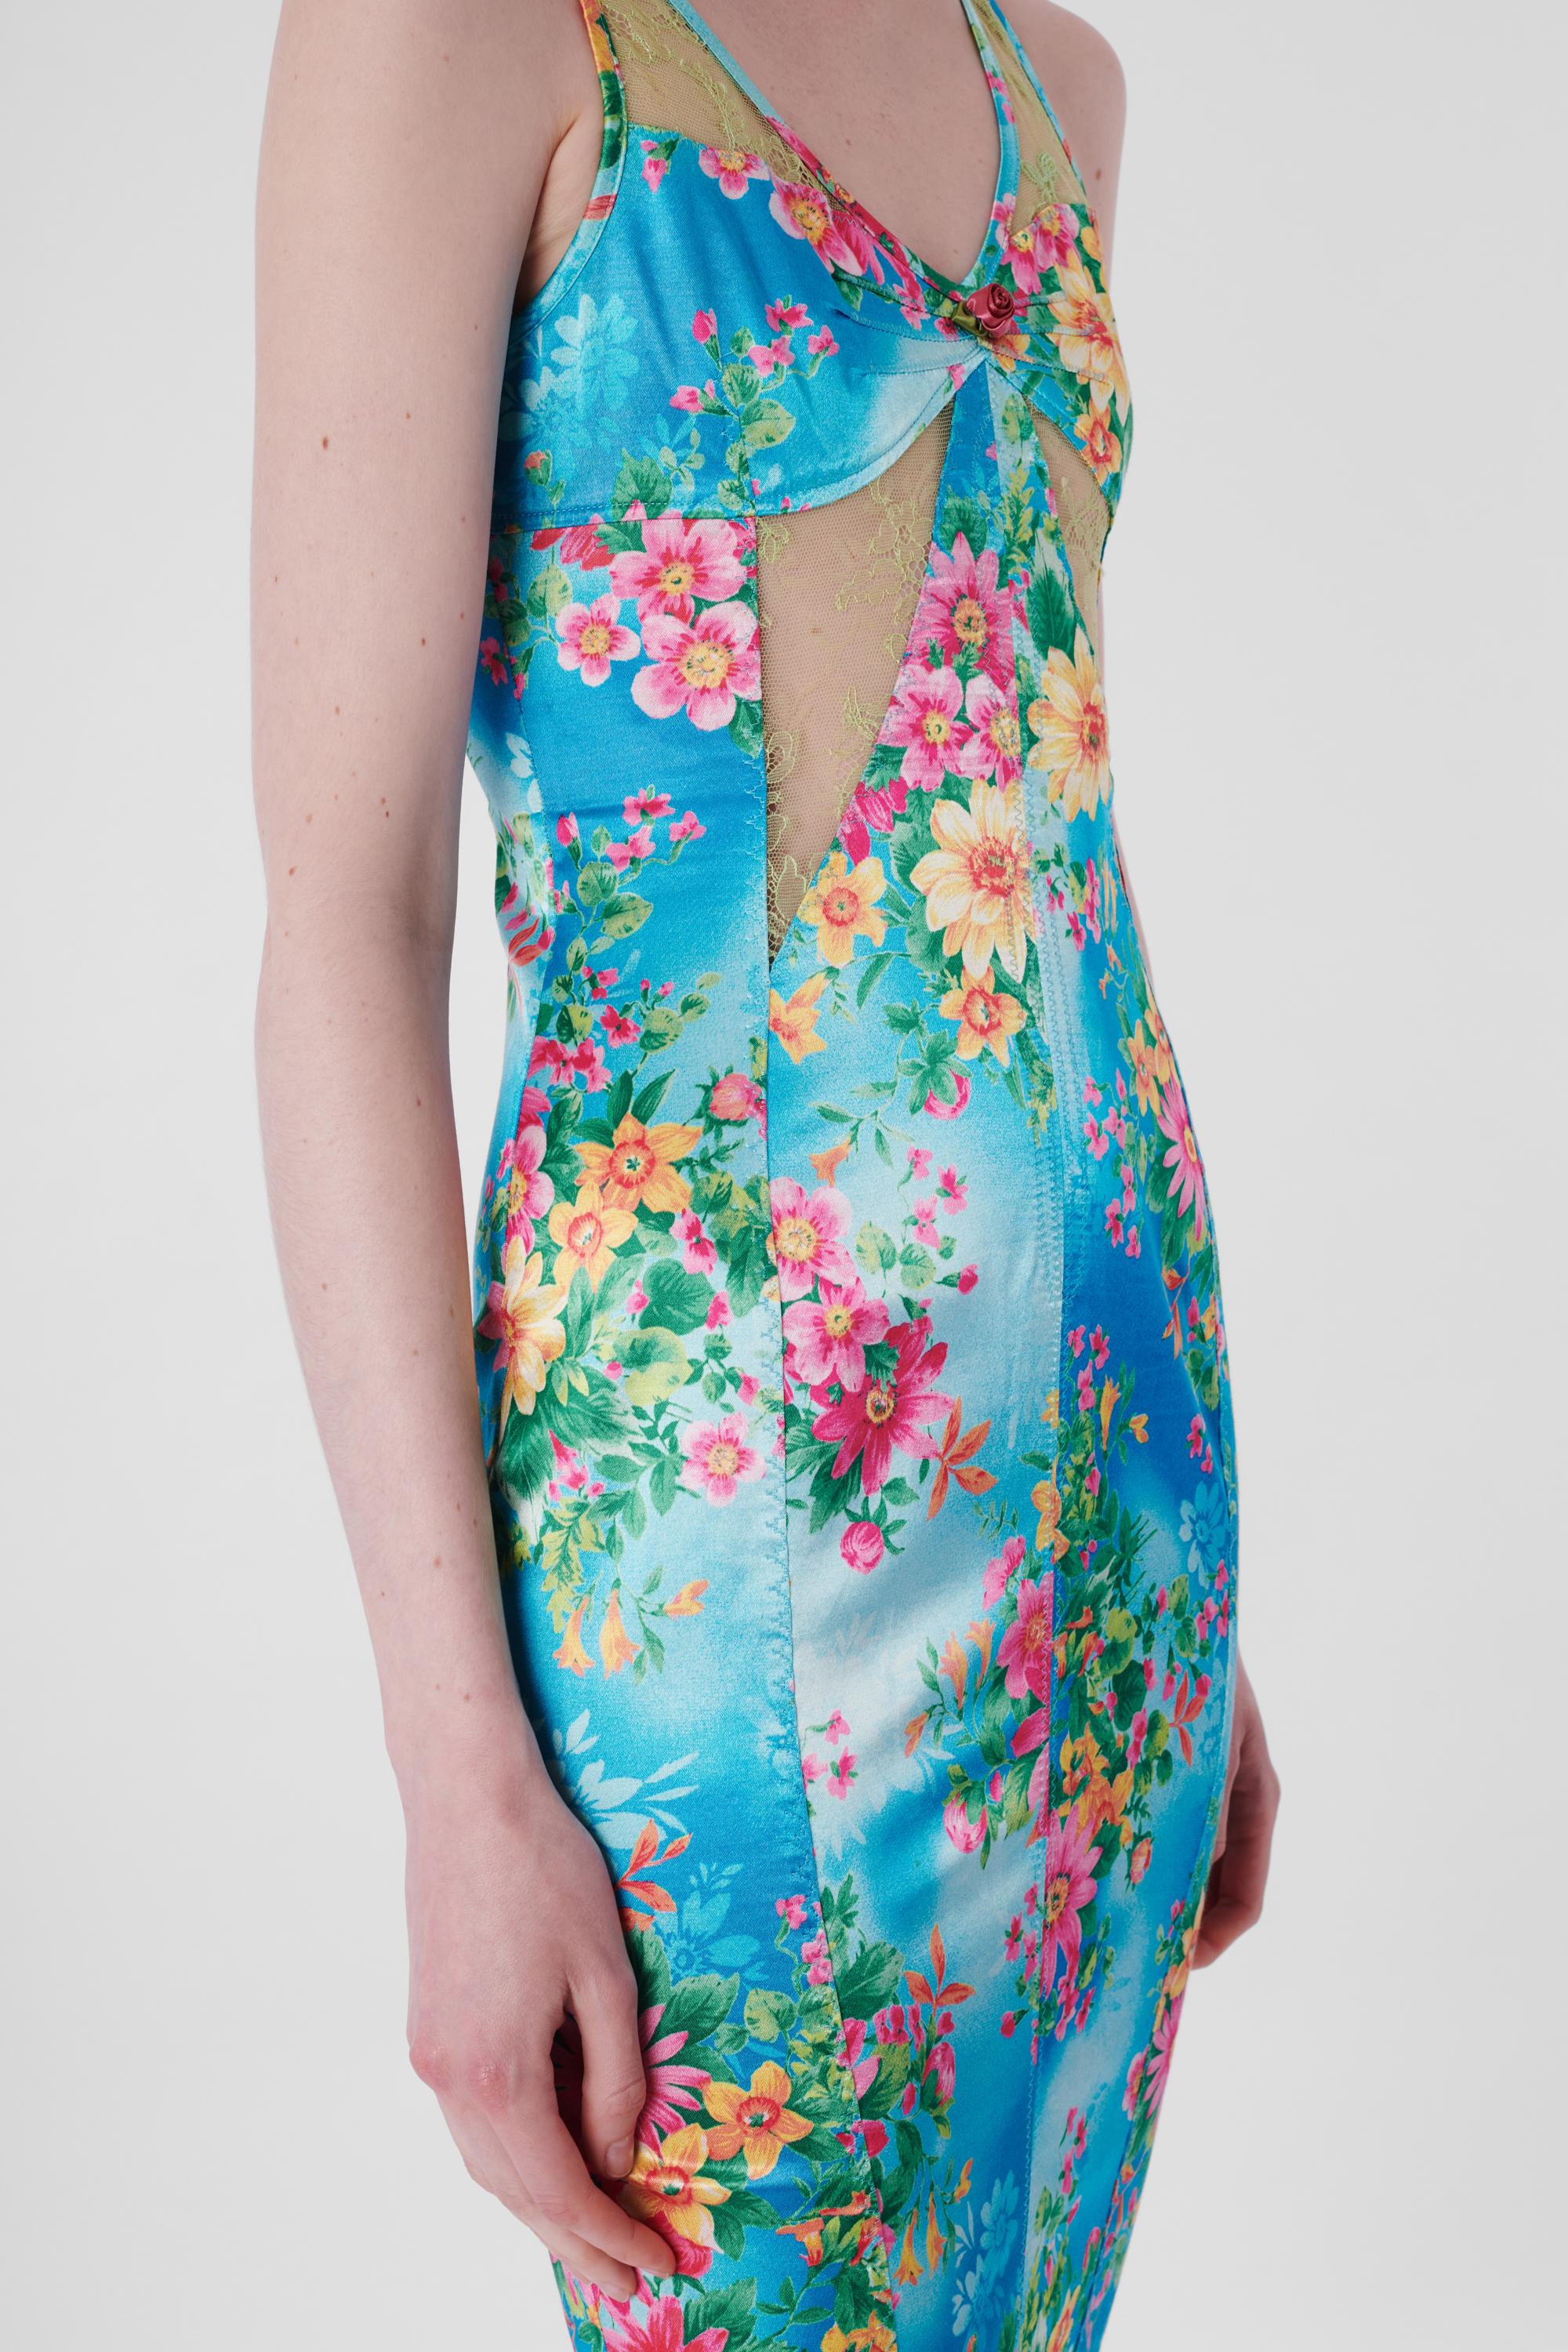  Vintage Floral Lace Bodycon Dress Unisexe 